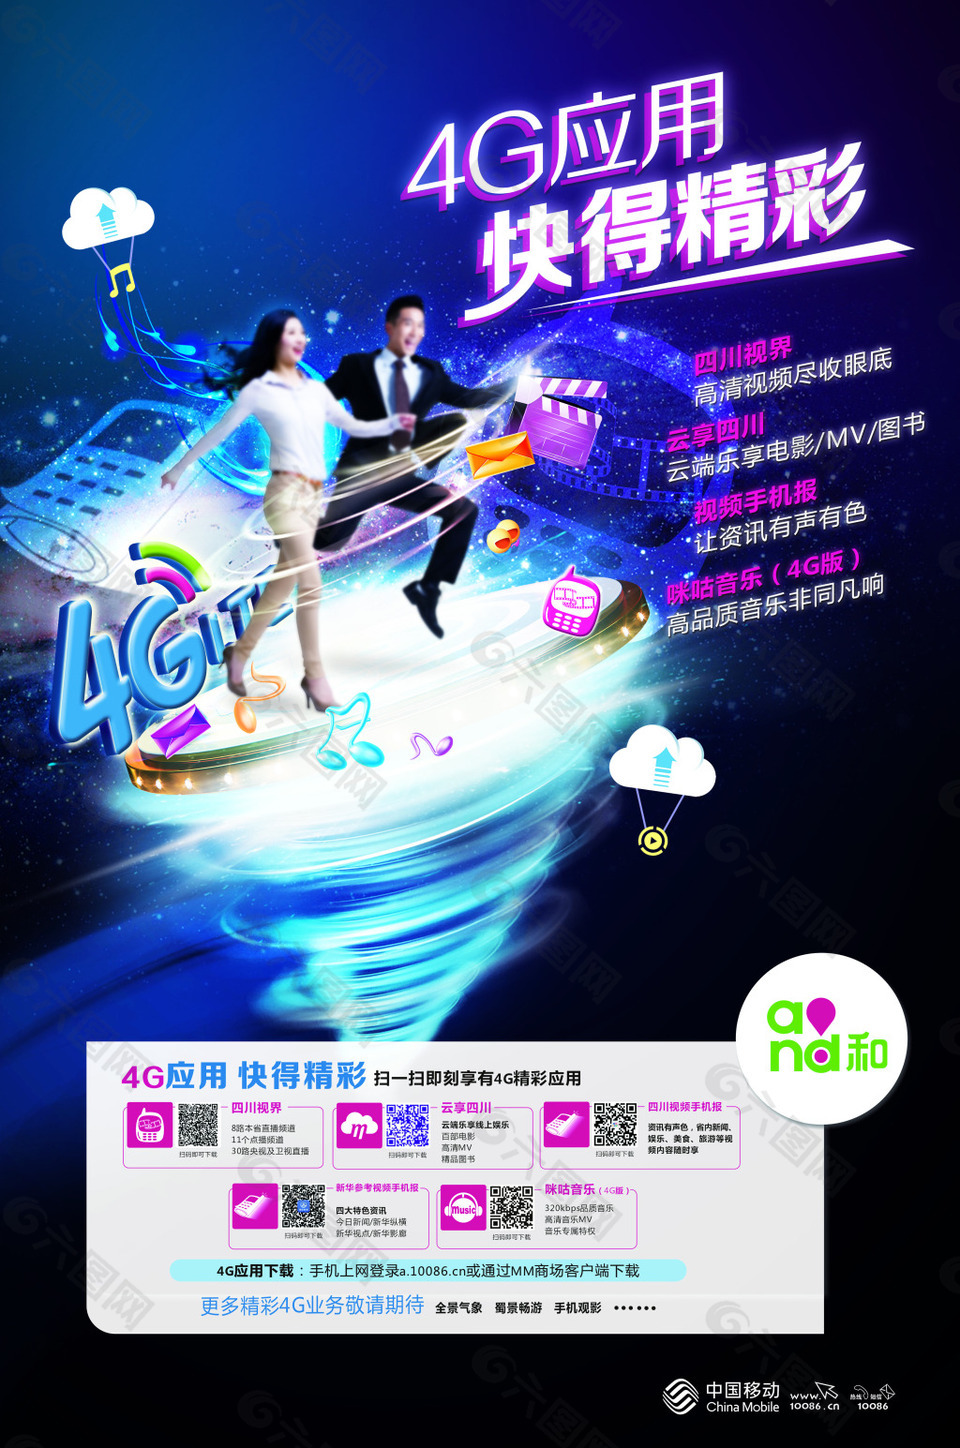 中国移动宣传海报设计psd素材平面广告素材免费下载(图片编号:7868845